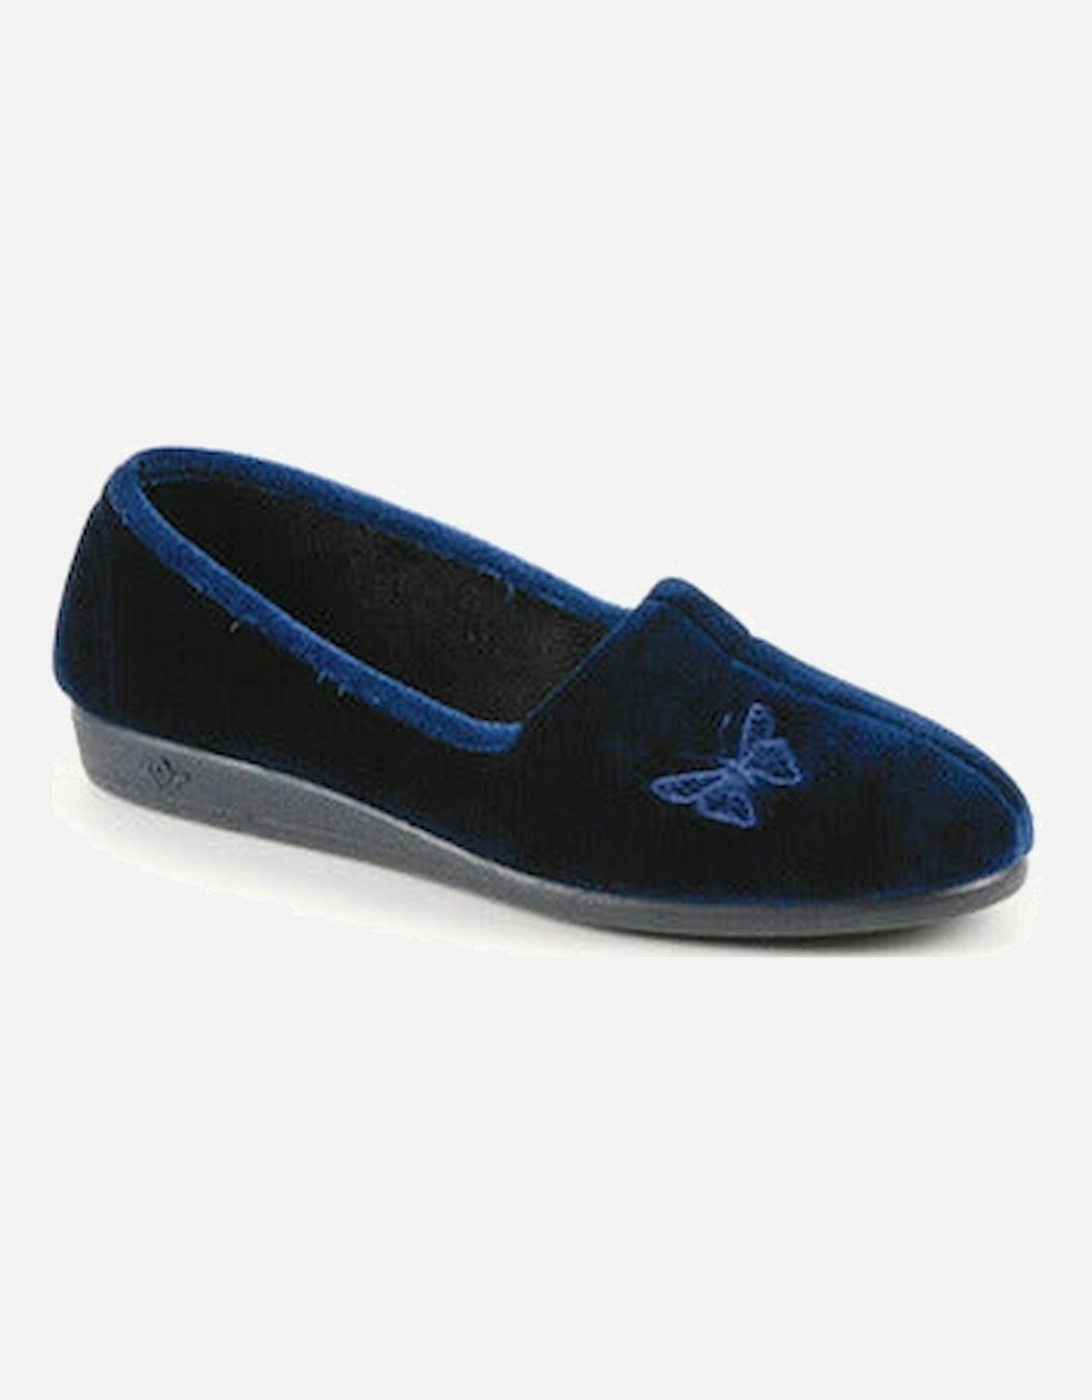 Ladies Slippers KLA001 Butterfly blue, 2 of 1